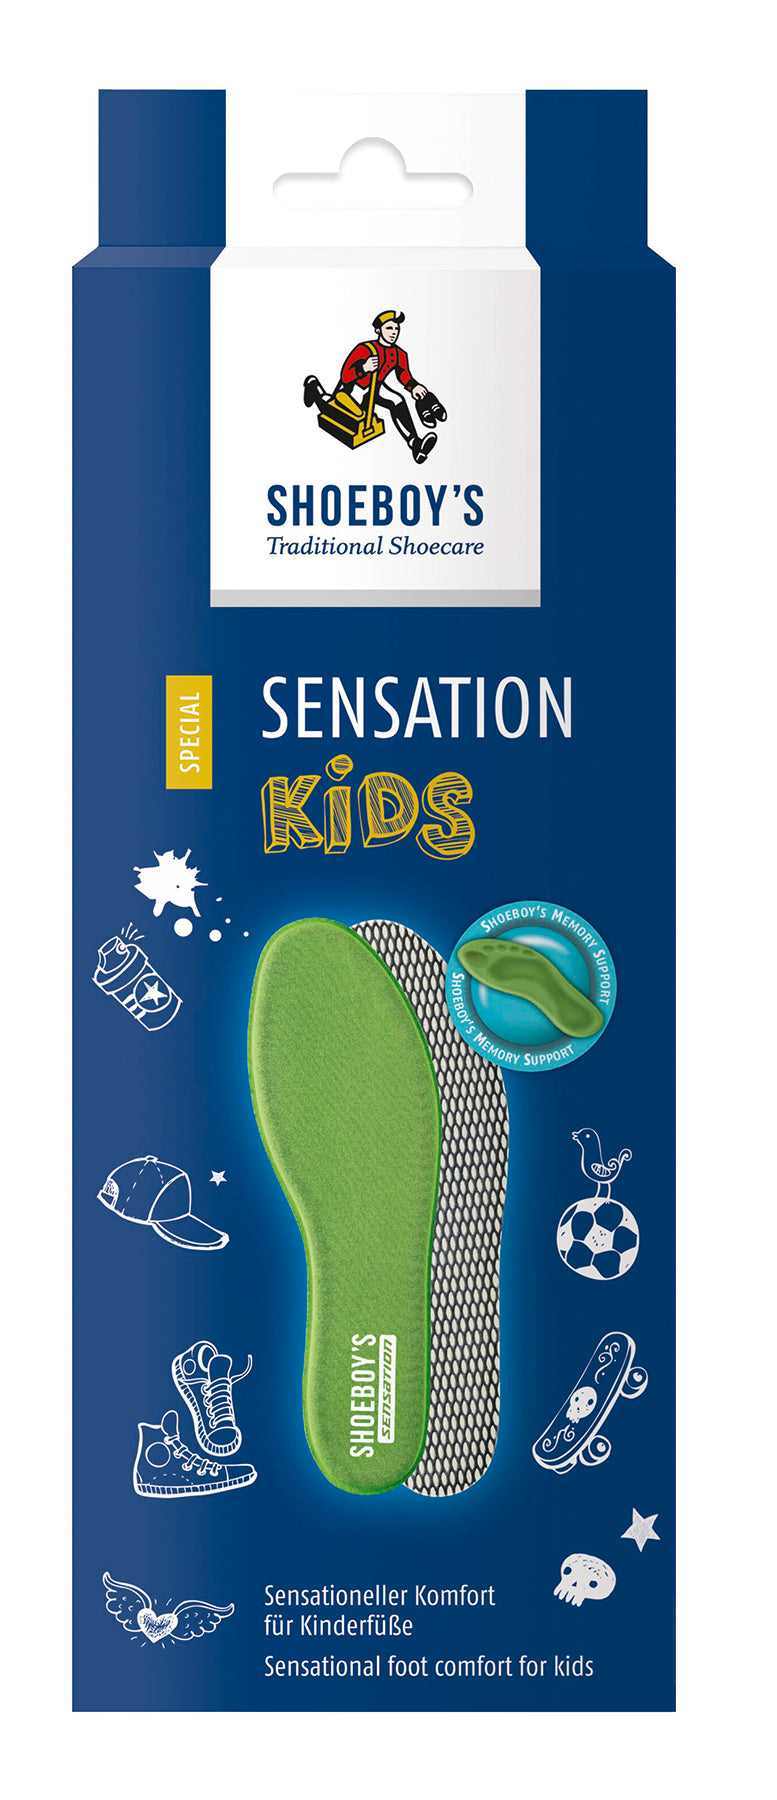 Shoeboy’s Sensation Kids Insoles, shoeboy's insoles, insoles, shoe insoles, kids shoe insoles, kids insoles